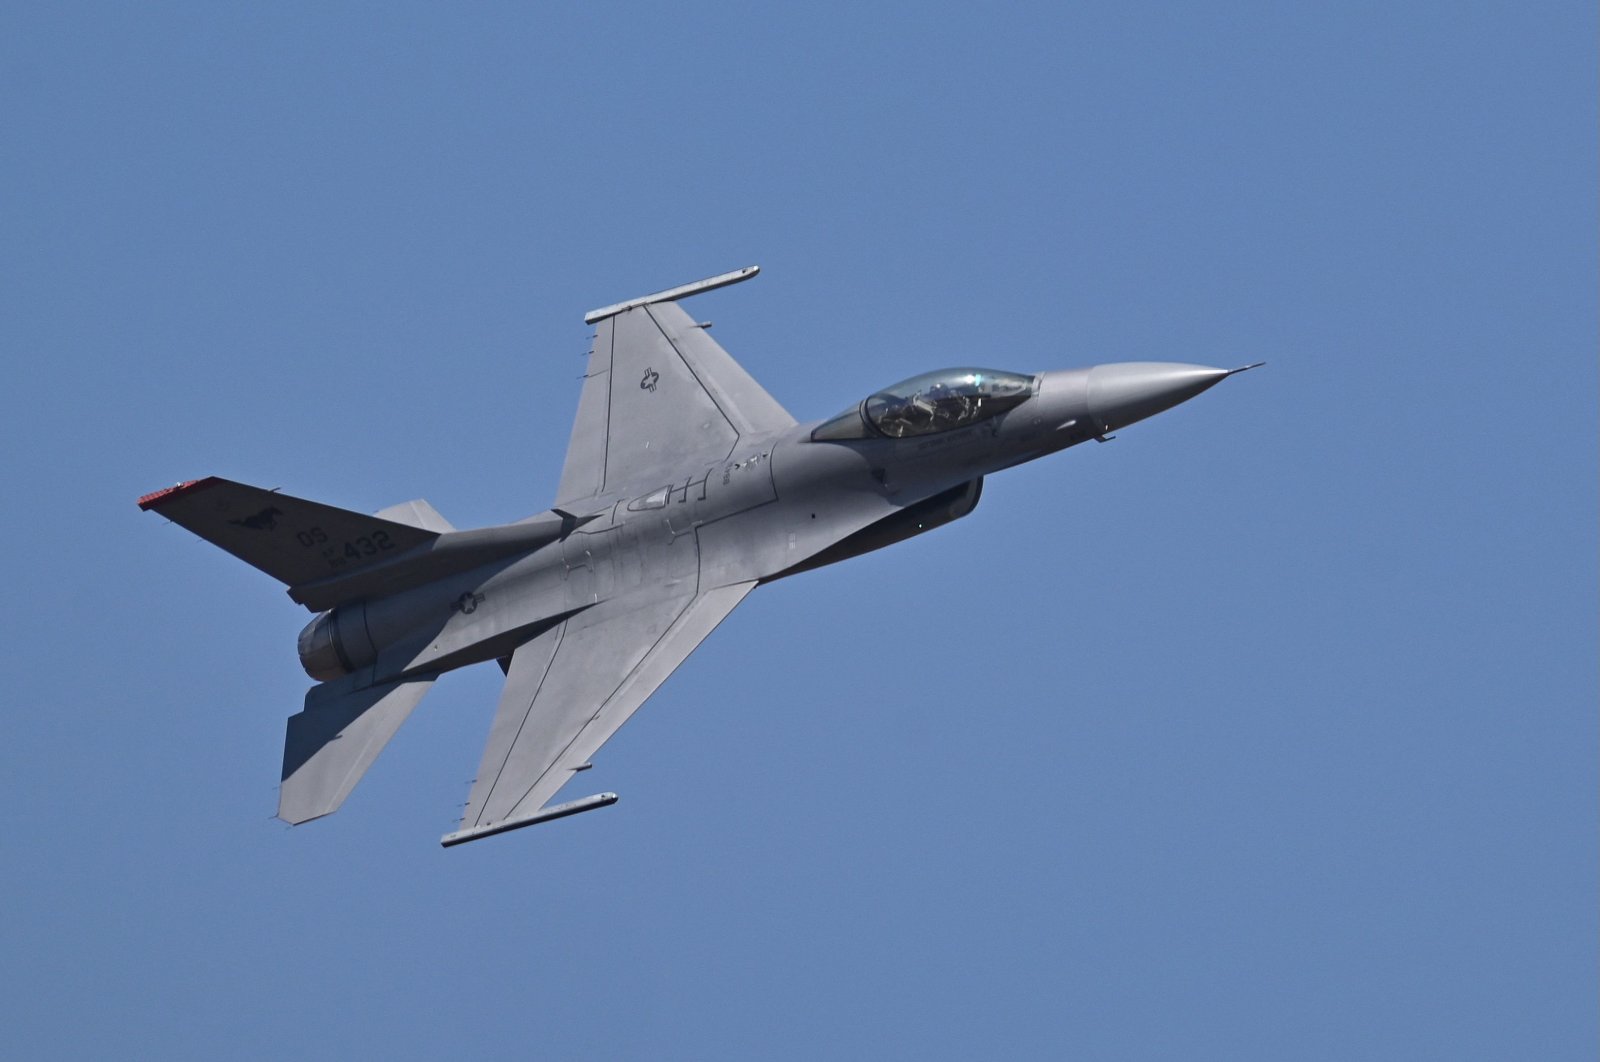 Türkiye menolak prasyarat untuk membeli F-16 karena admin Biden bersumpah mendukung